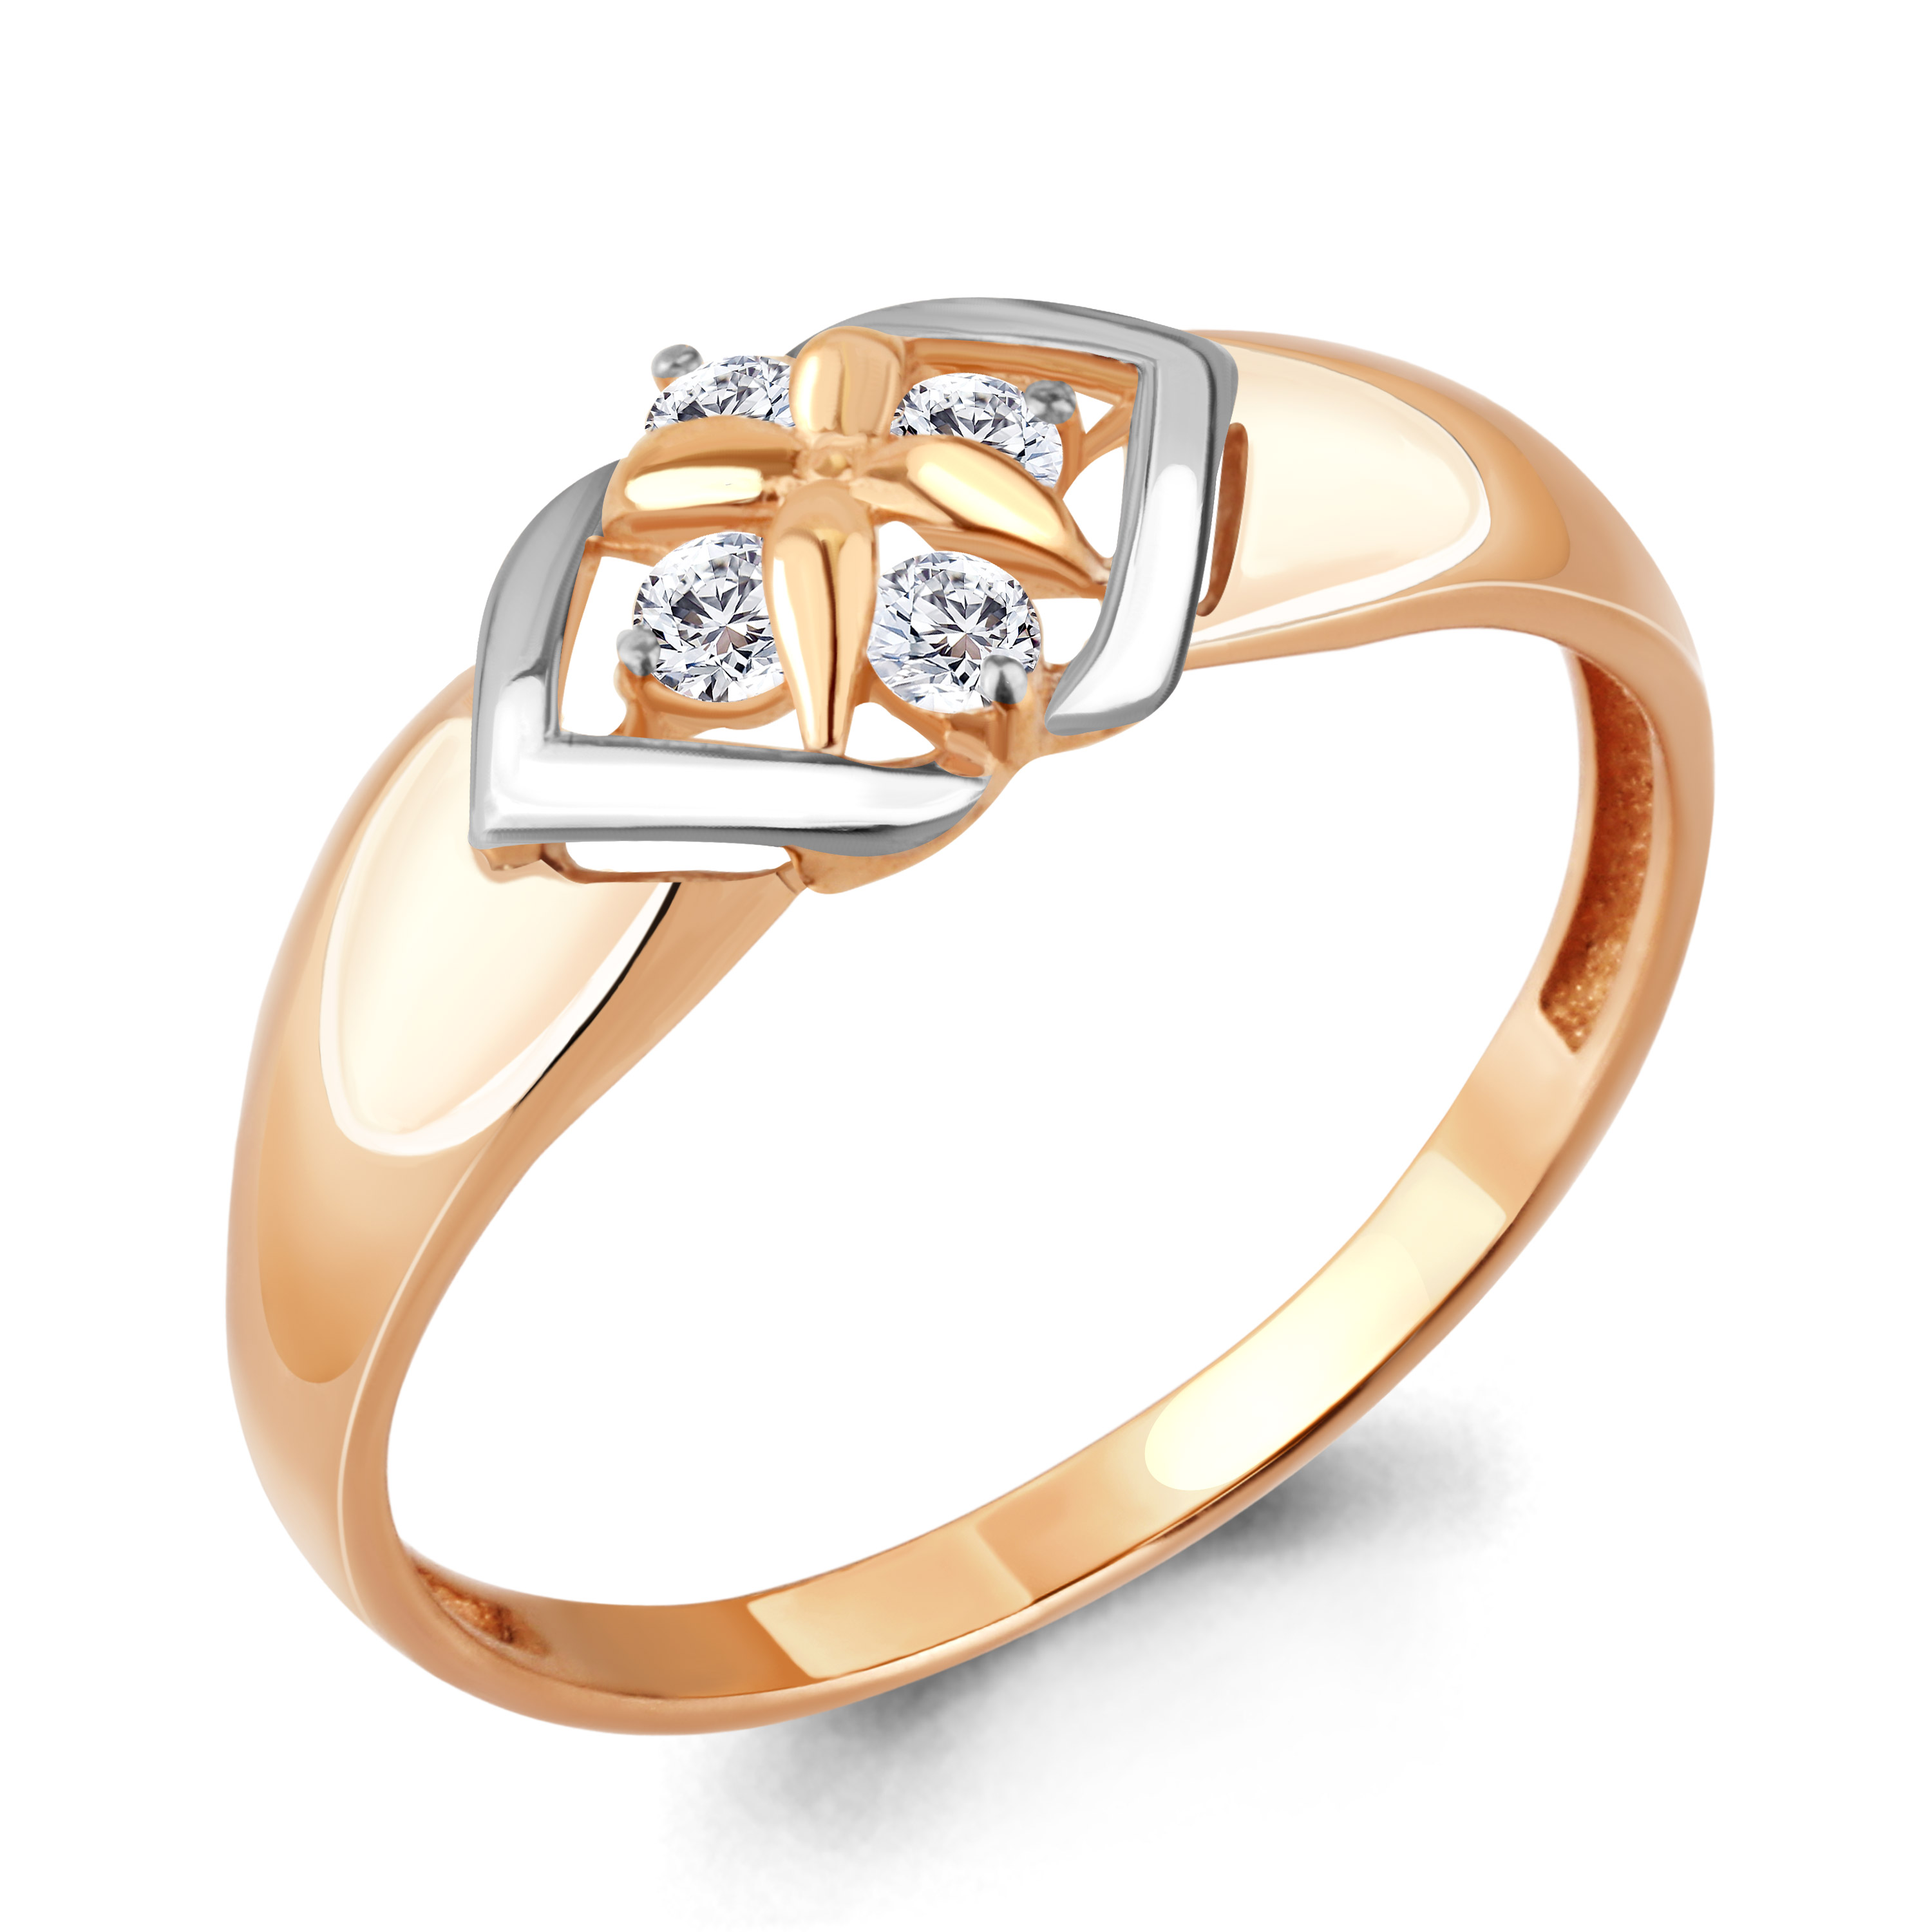 Aquamarine кольцо с позолотой и бриллиантом